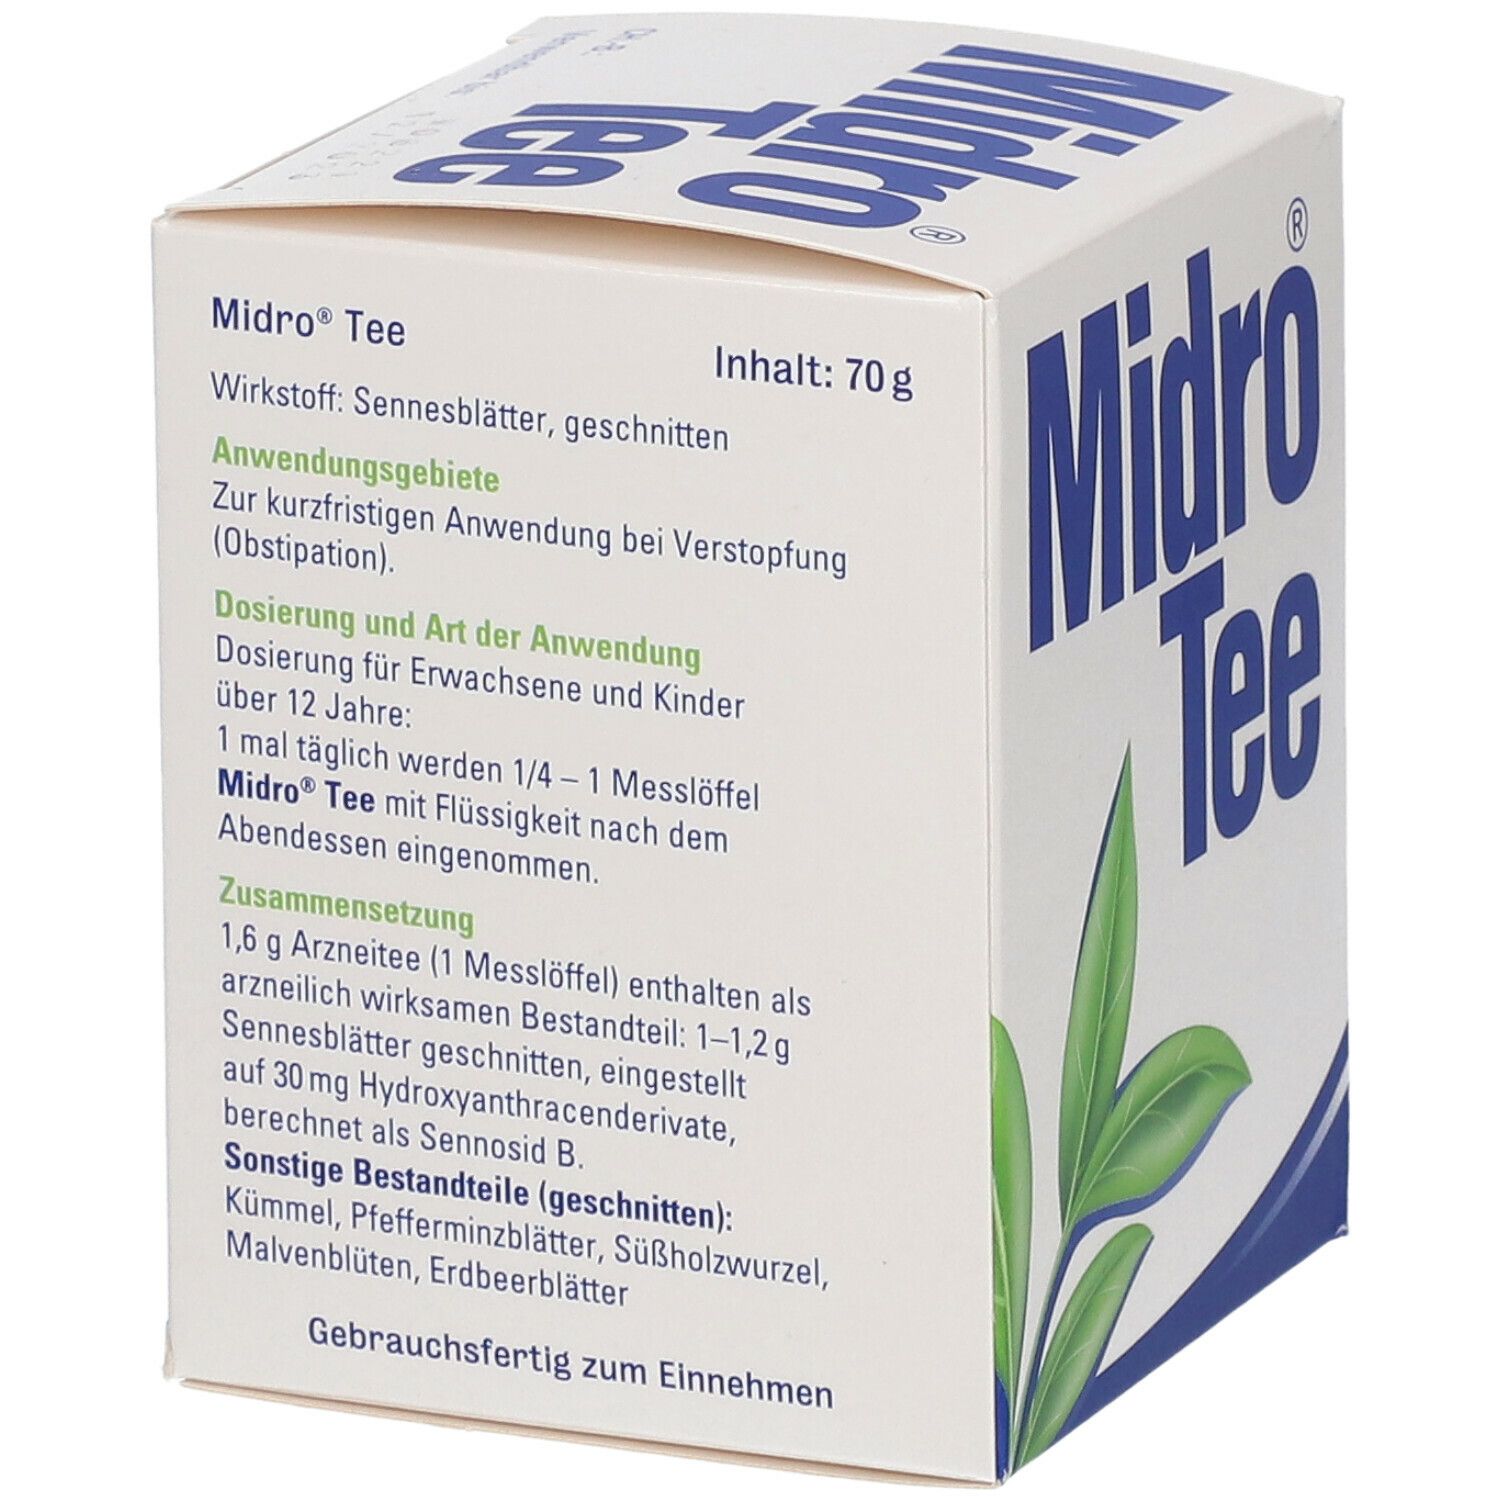 Midro® Tee